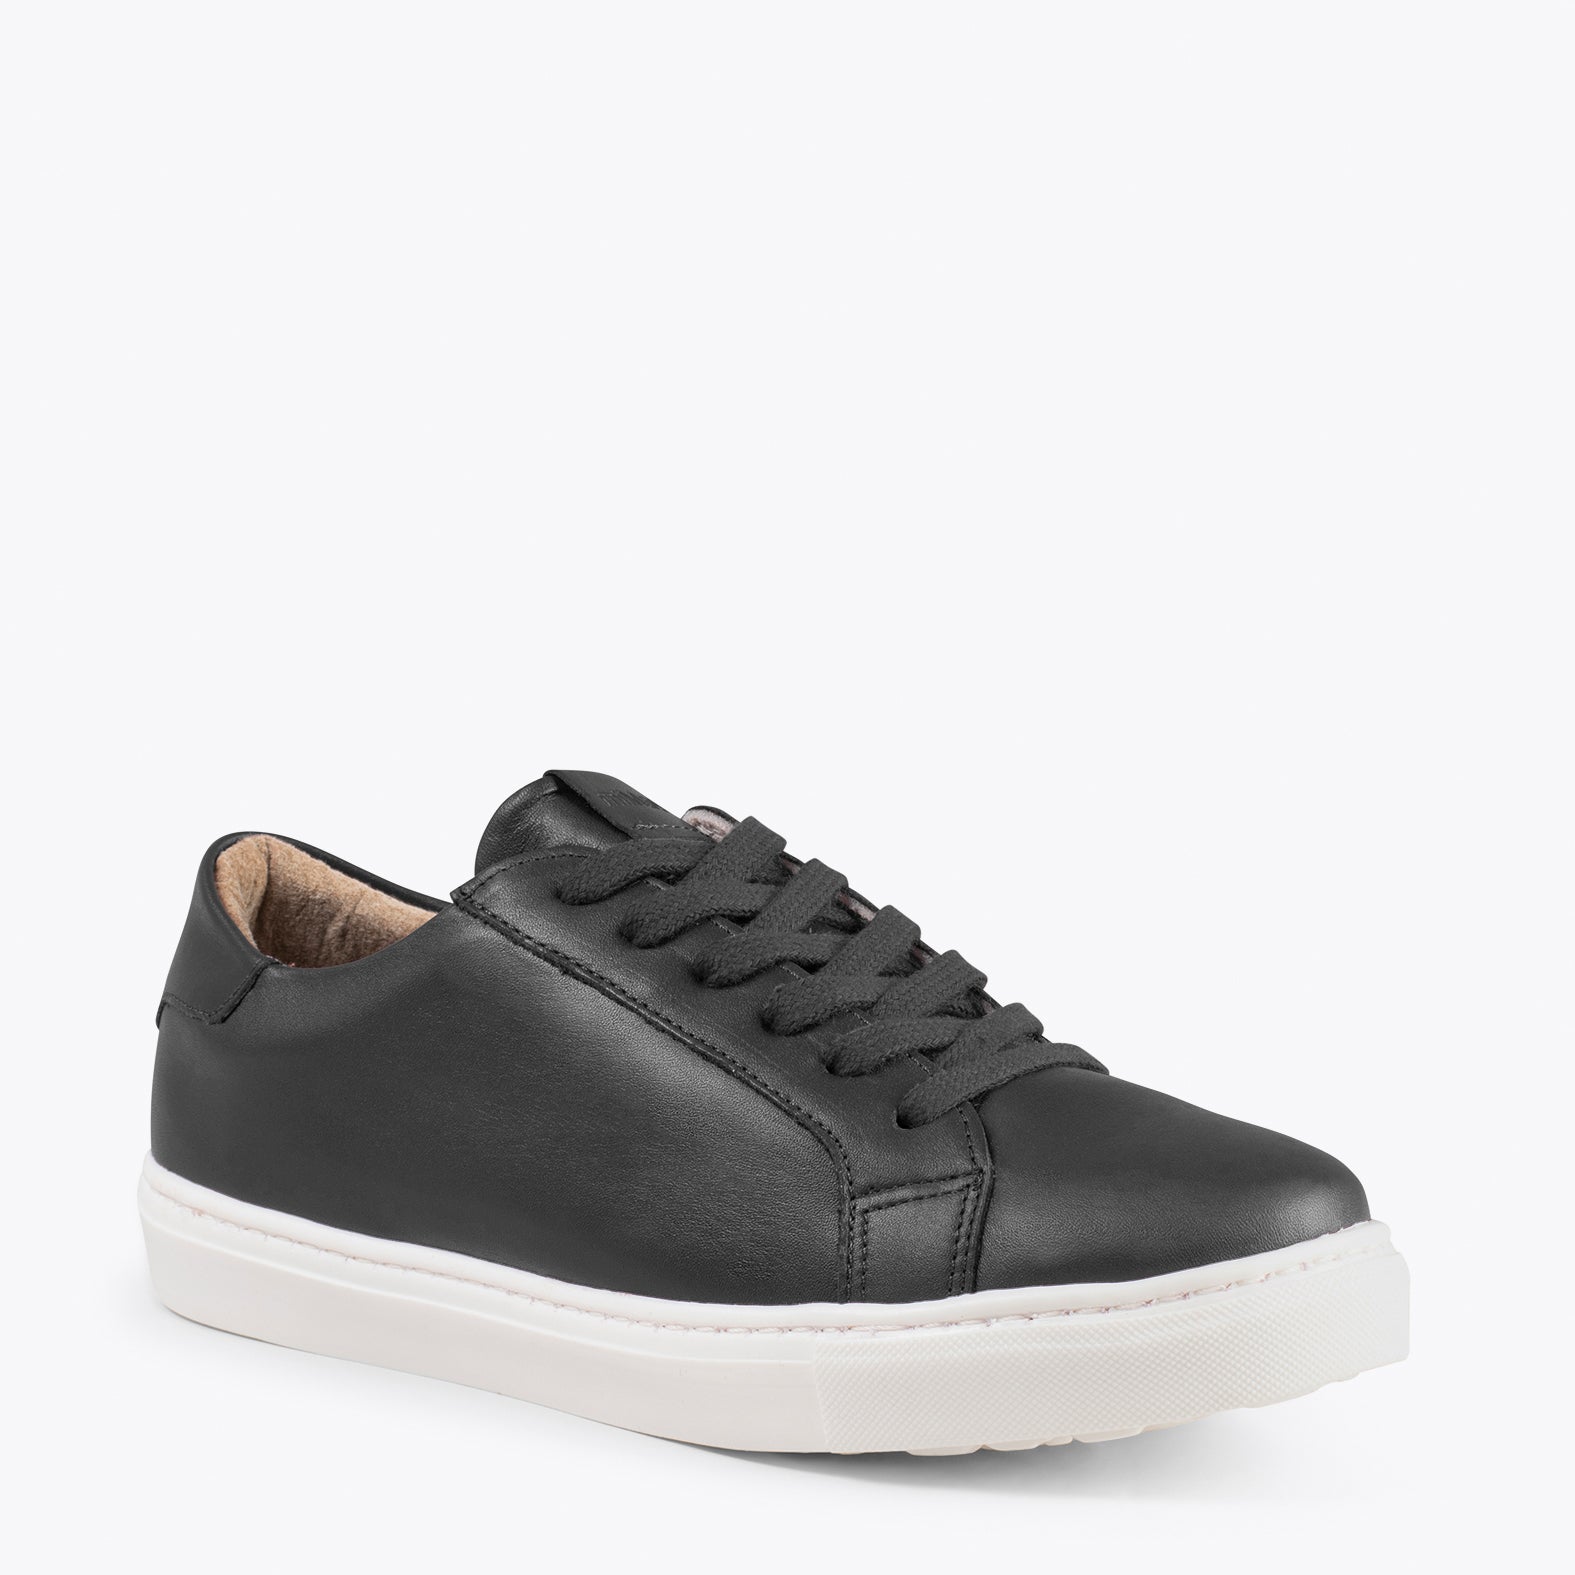 SNEAKER – BLACK elegant lifestyle sneakers